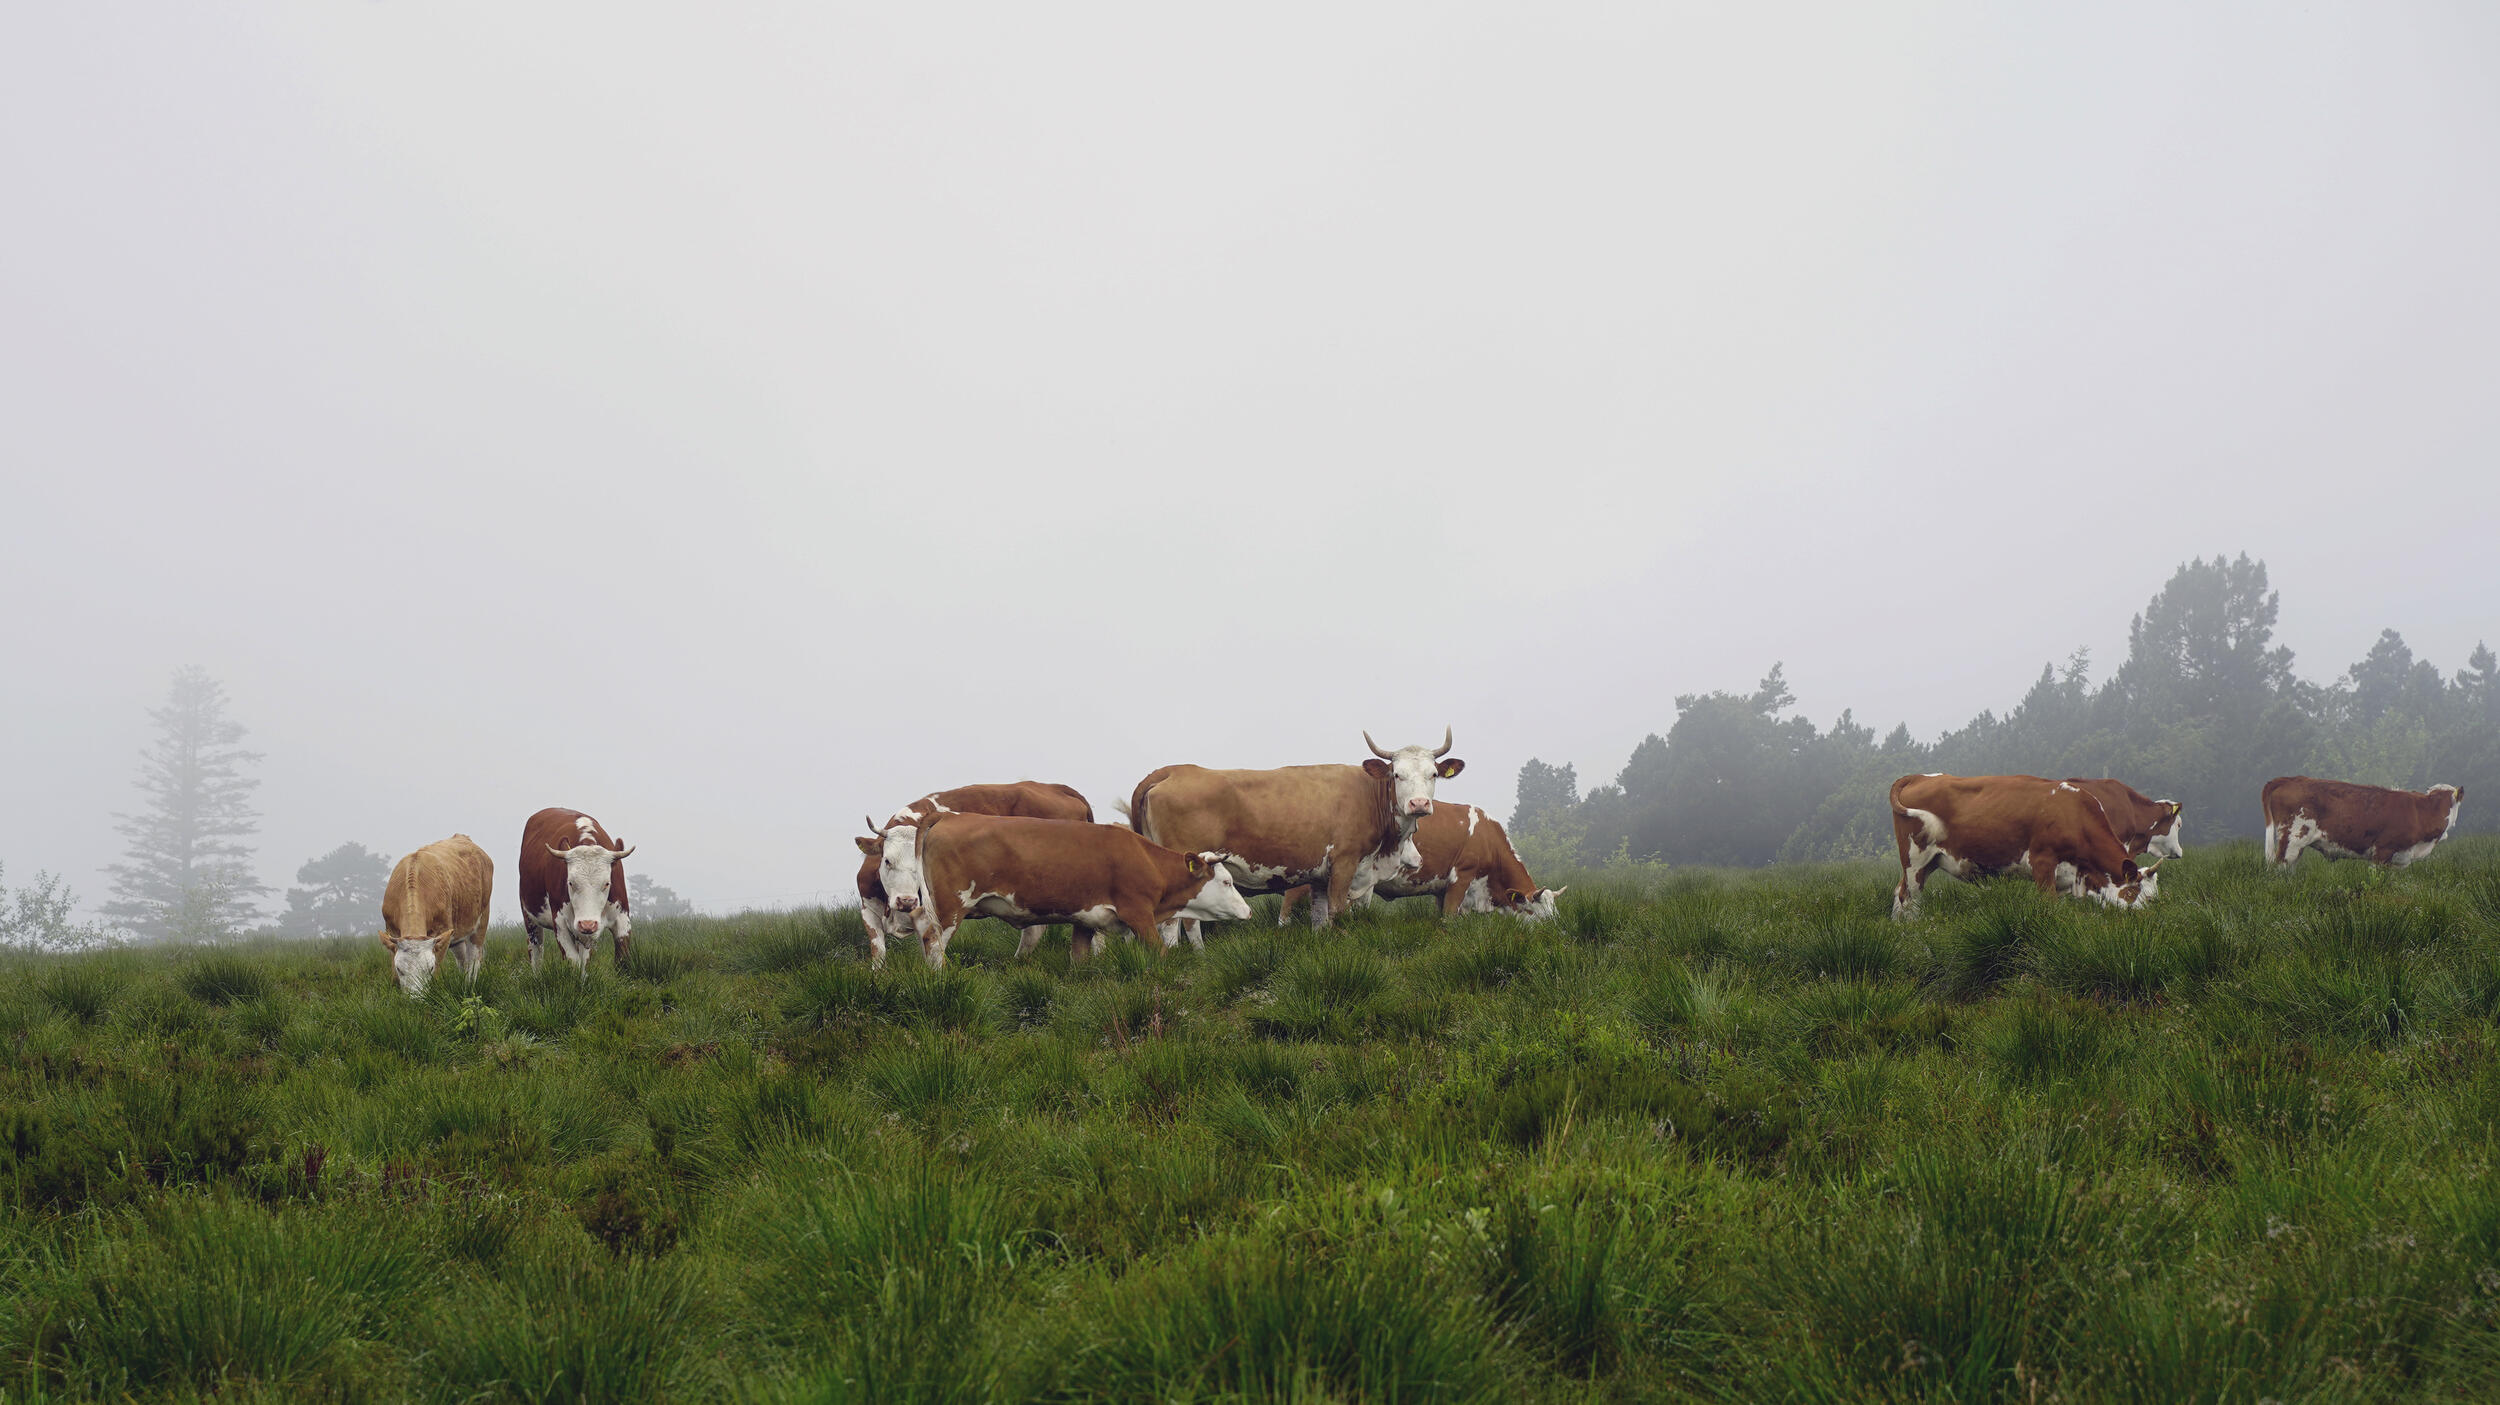 Landschaftsbild mit braunweiß gefleckten Rindern auf einer Weide an einem nebligen Tag. 